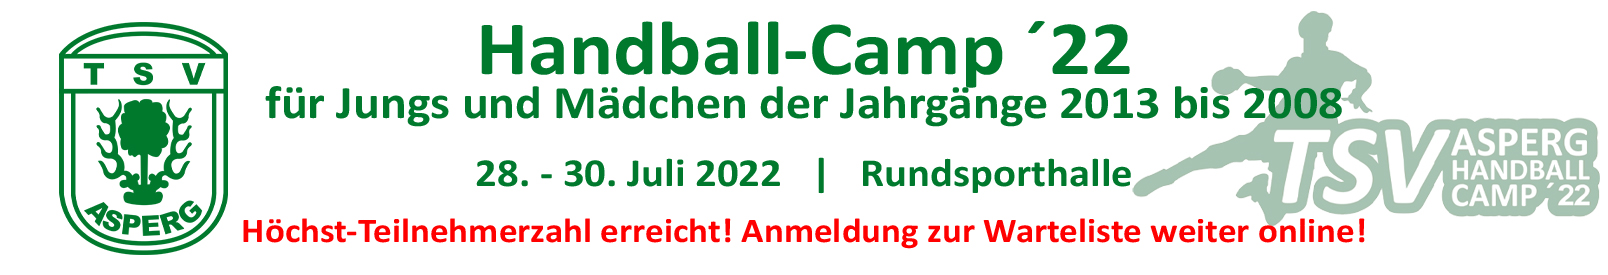 Handball-Camp 2021